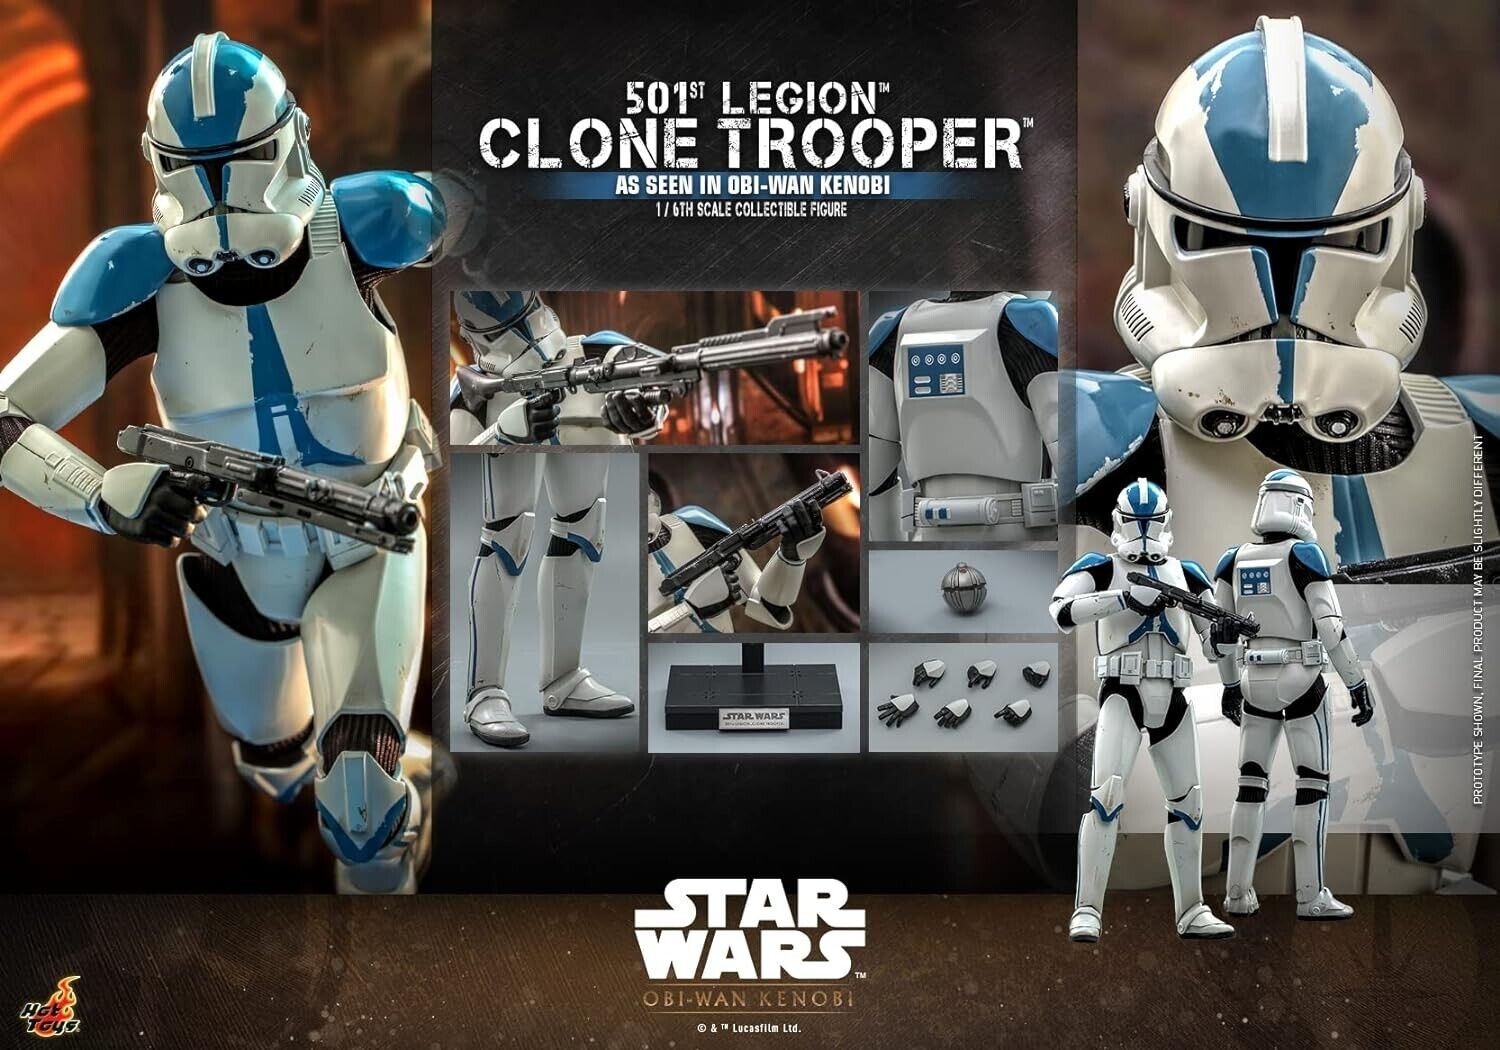 Hot Toys TV Master Piece STAR WARS Obi Wan igure Clone Trooper 501 LEGION F/S